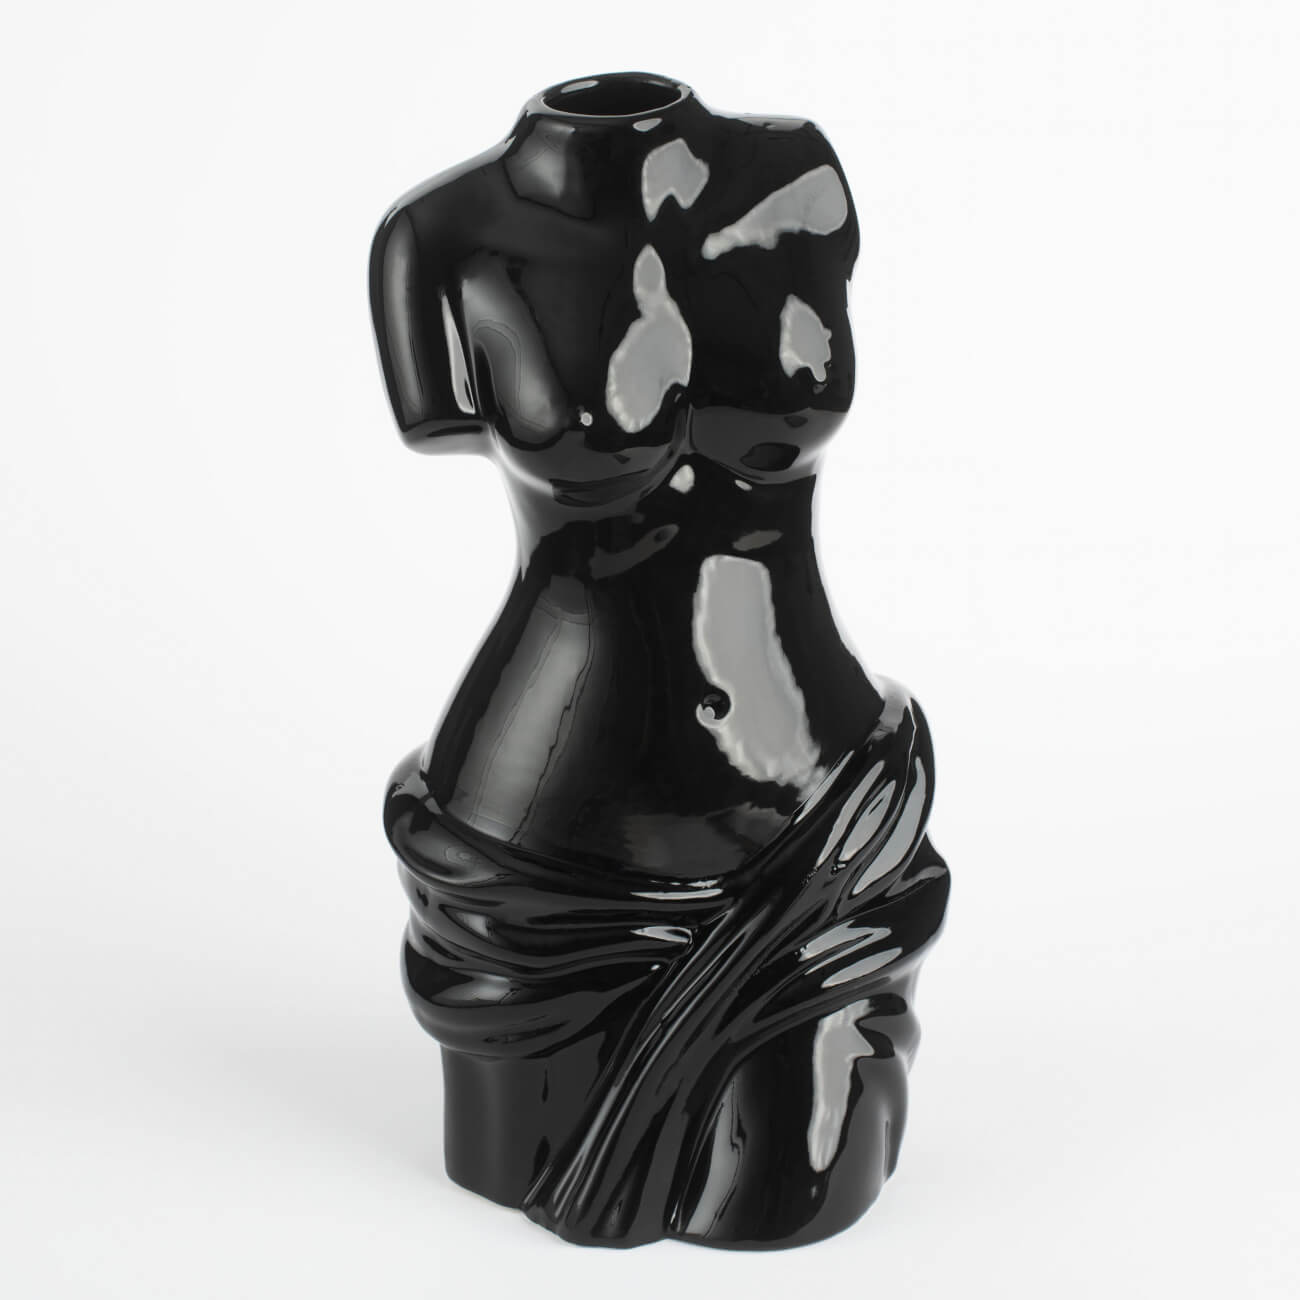 Ваза для цветов, 24 см, декоративная, фарфор P, черная, Женский торс, Torso ваза для ов 29 см декоративная керамика черная графичное лицо face